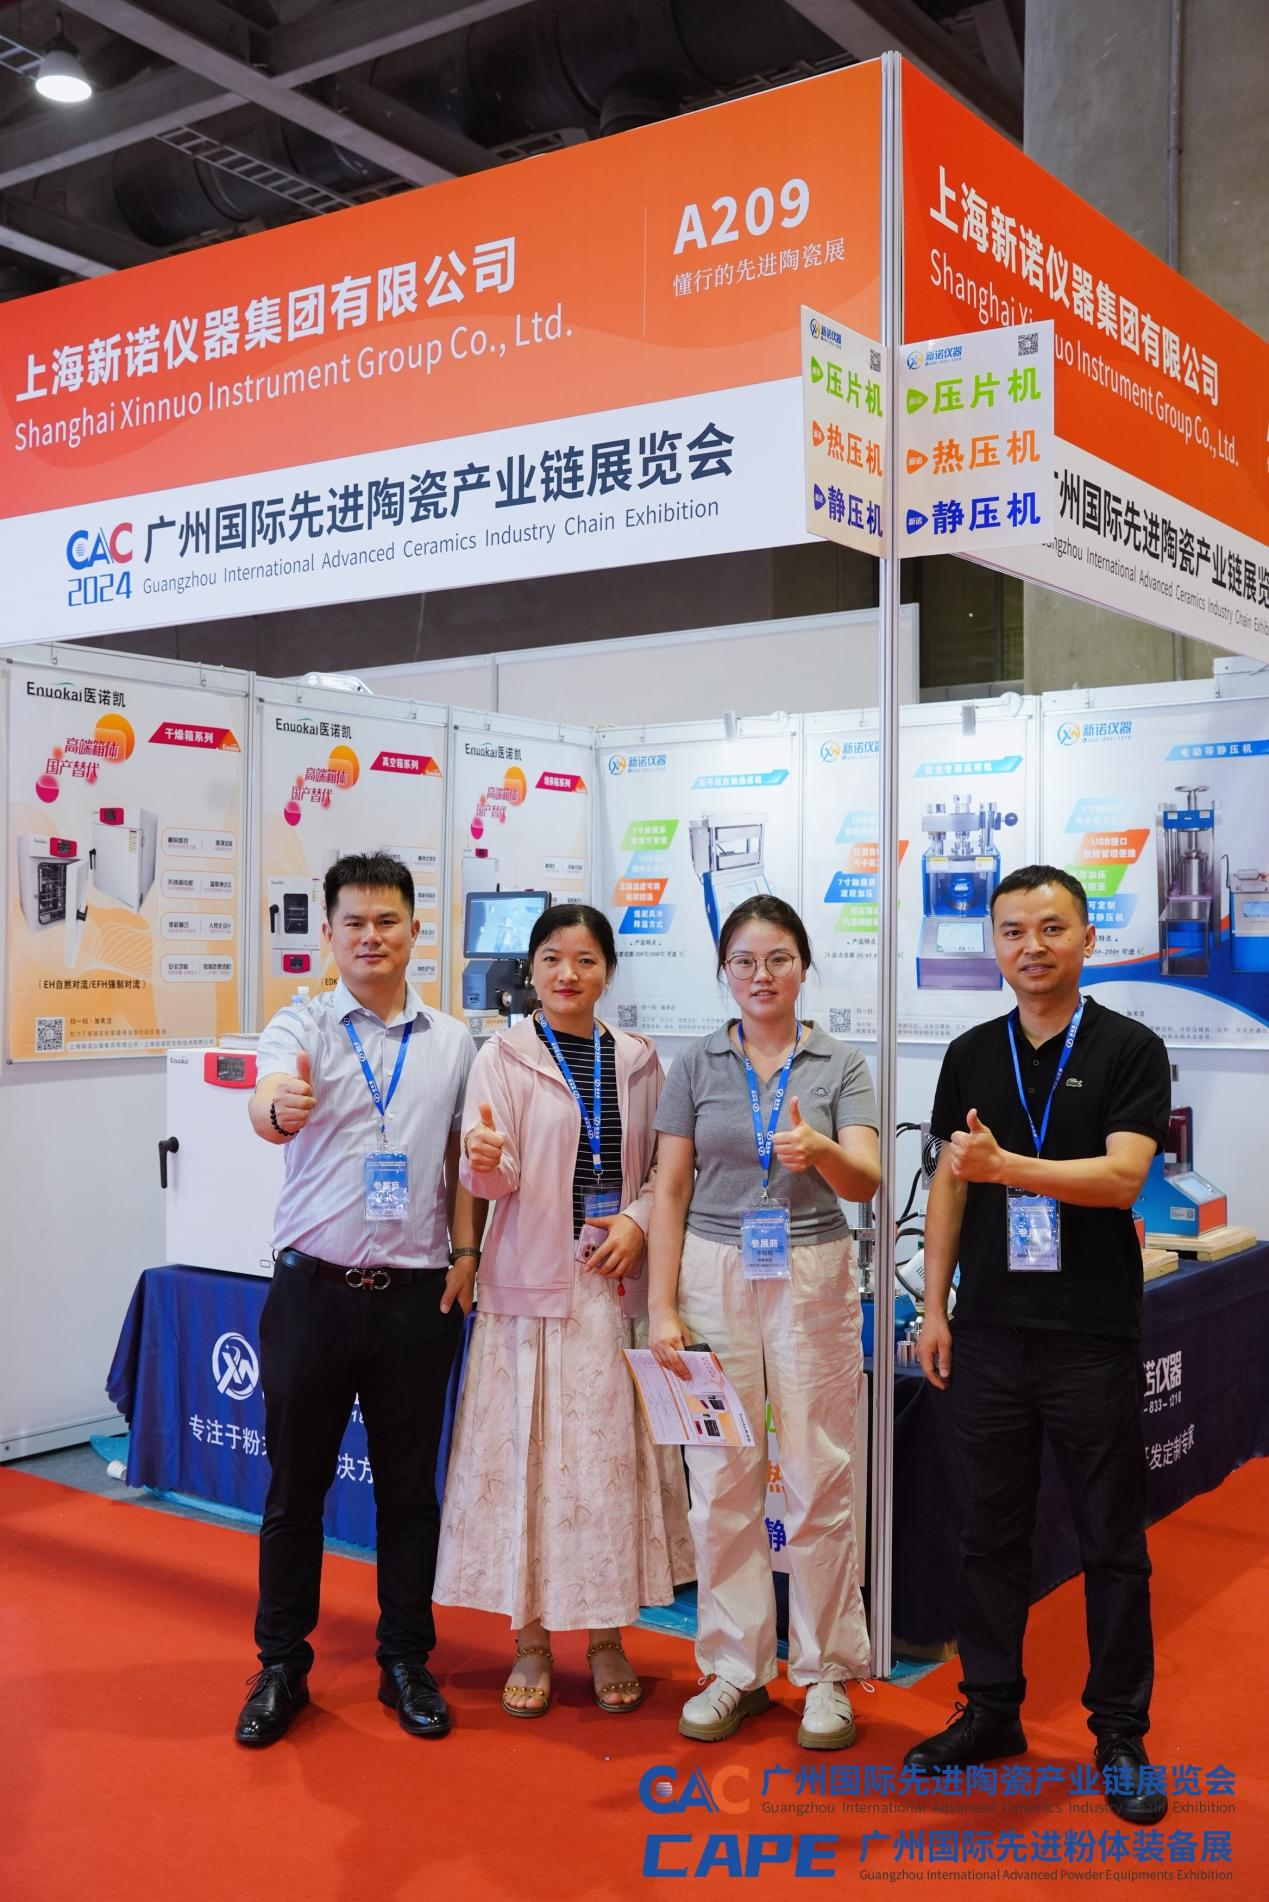 展会回顾 | 新诺仪器参展CAC2024广州国际先进陶瓷产业链展览会取得圆满成功